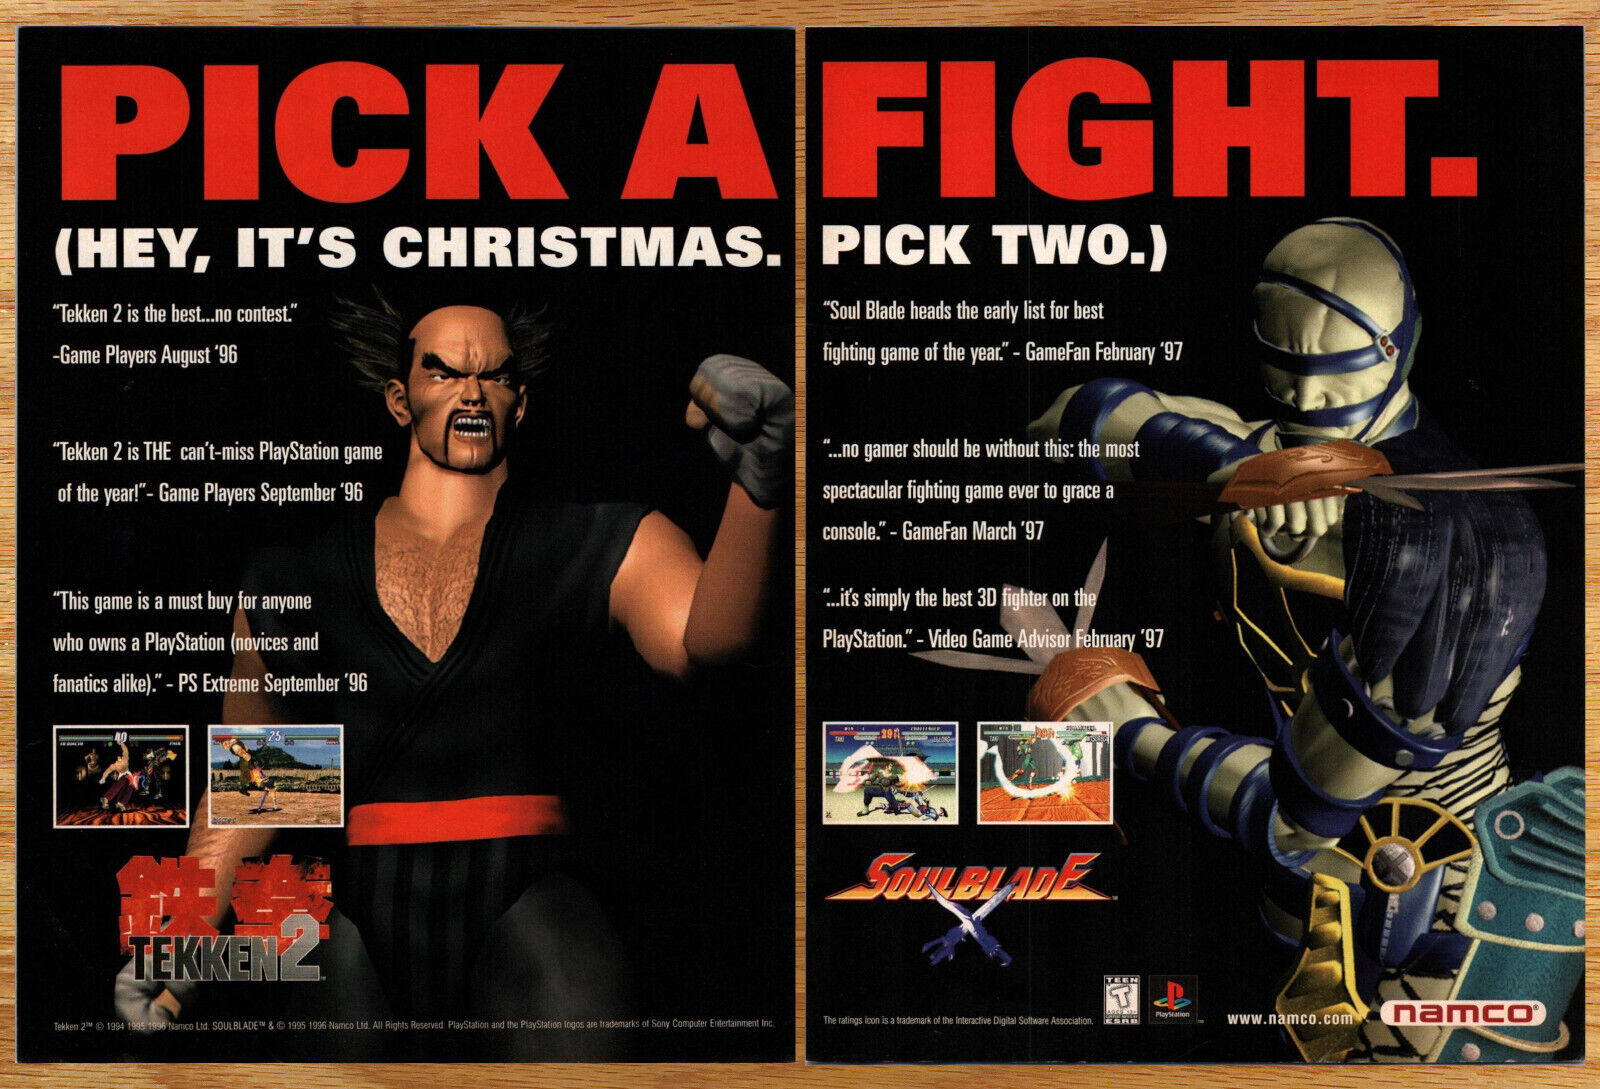 Tekken 2 + Soulblade Namco - 2 Page Video Game Print Ad Poster Promo Art 1998